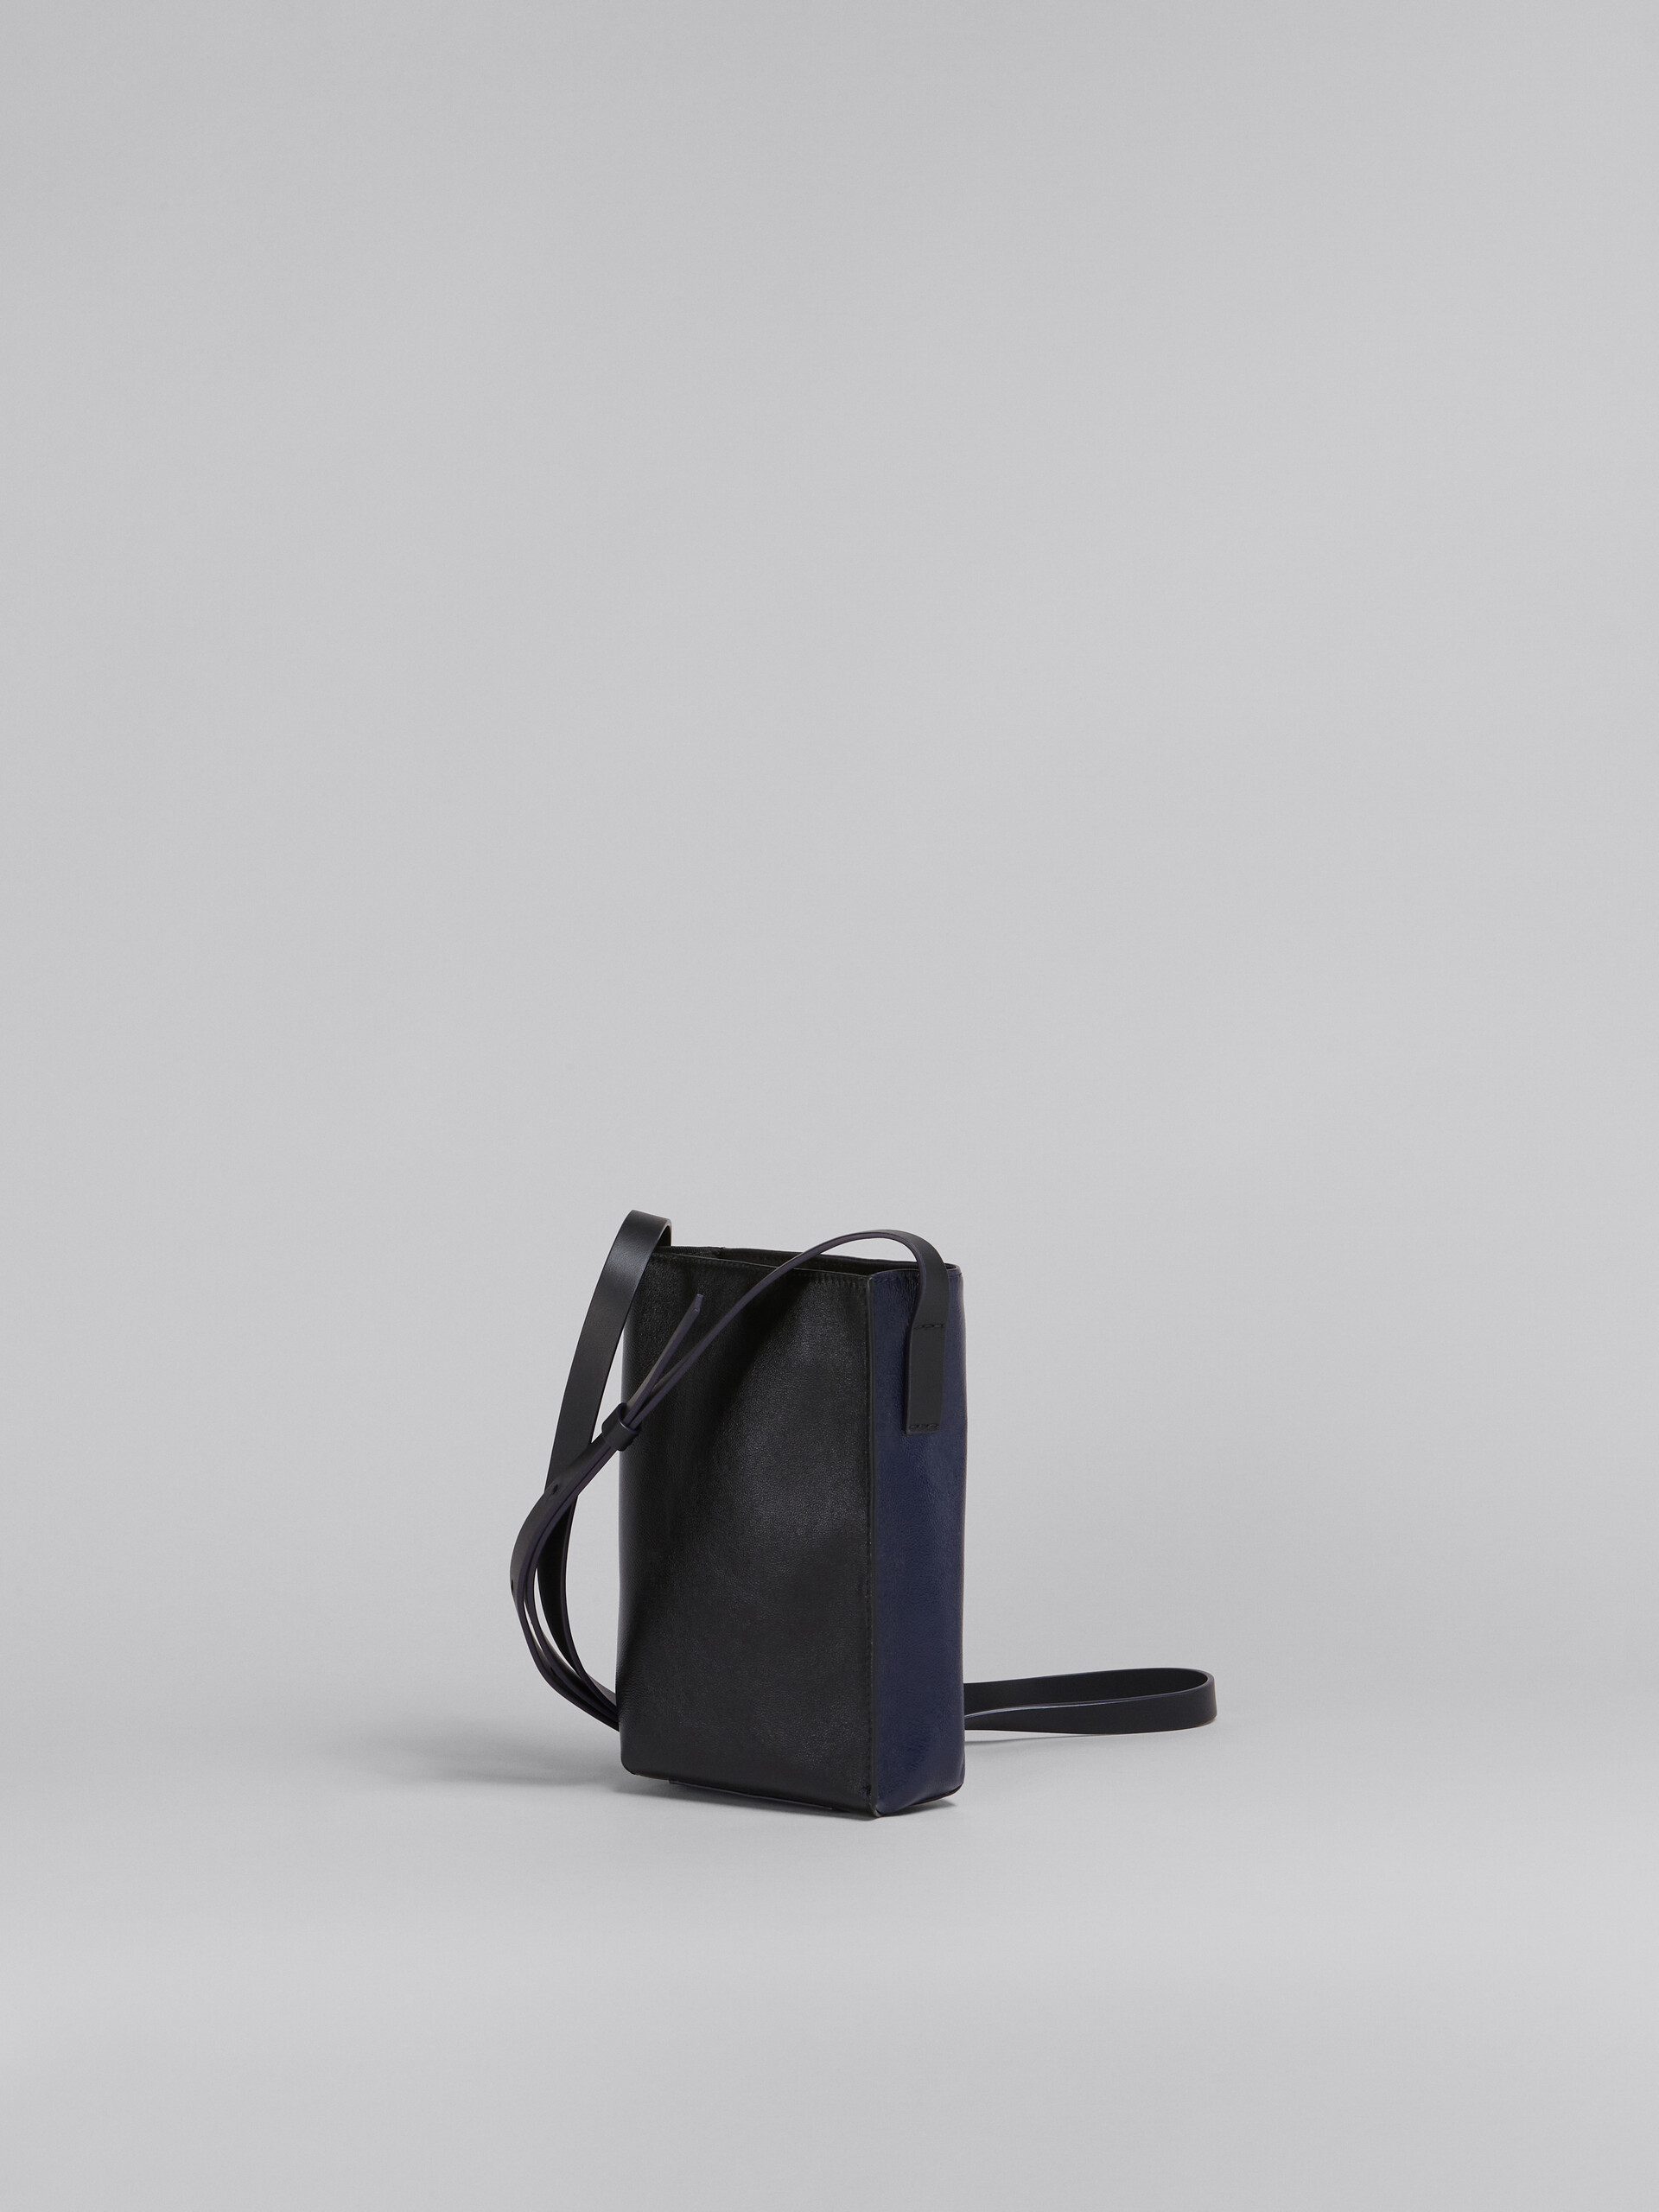 MUSEO SOFT bag piccola in pelle lucida blu e nera - Borse a spalla - Image 3